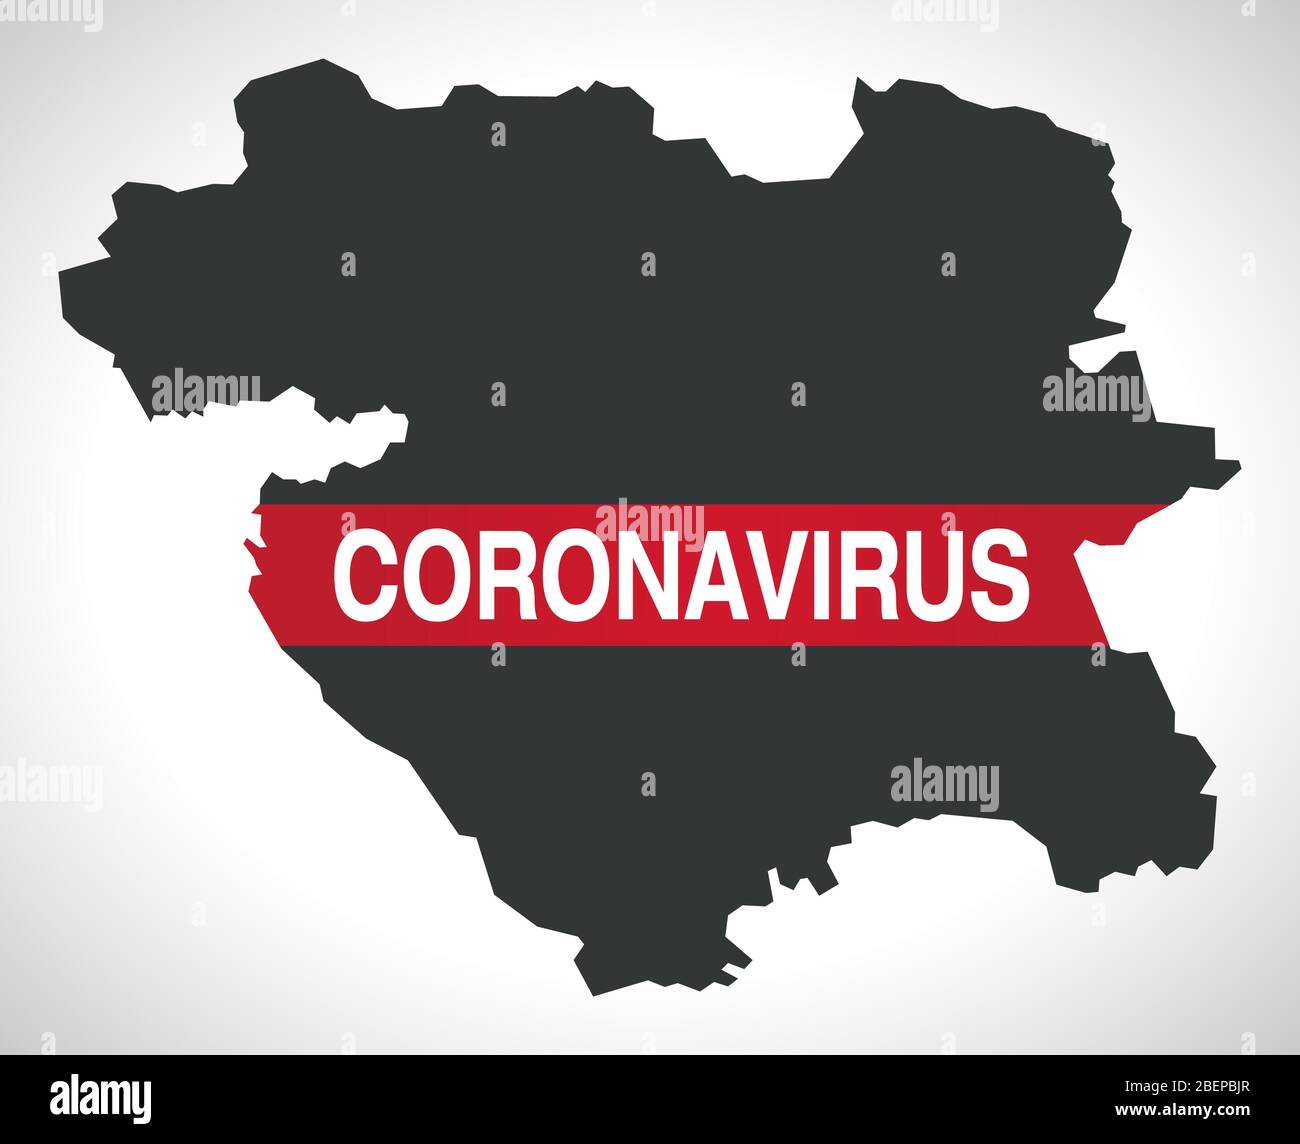 Kurdistan IRAN province map with Coronavirus warning illustration Stock Vector